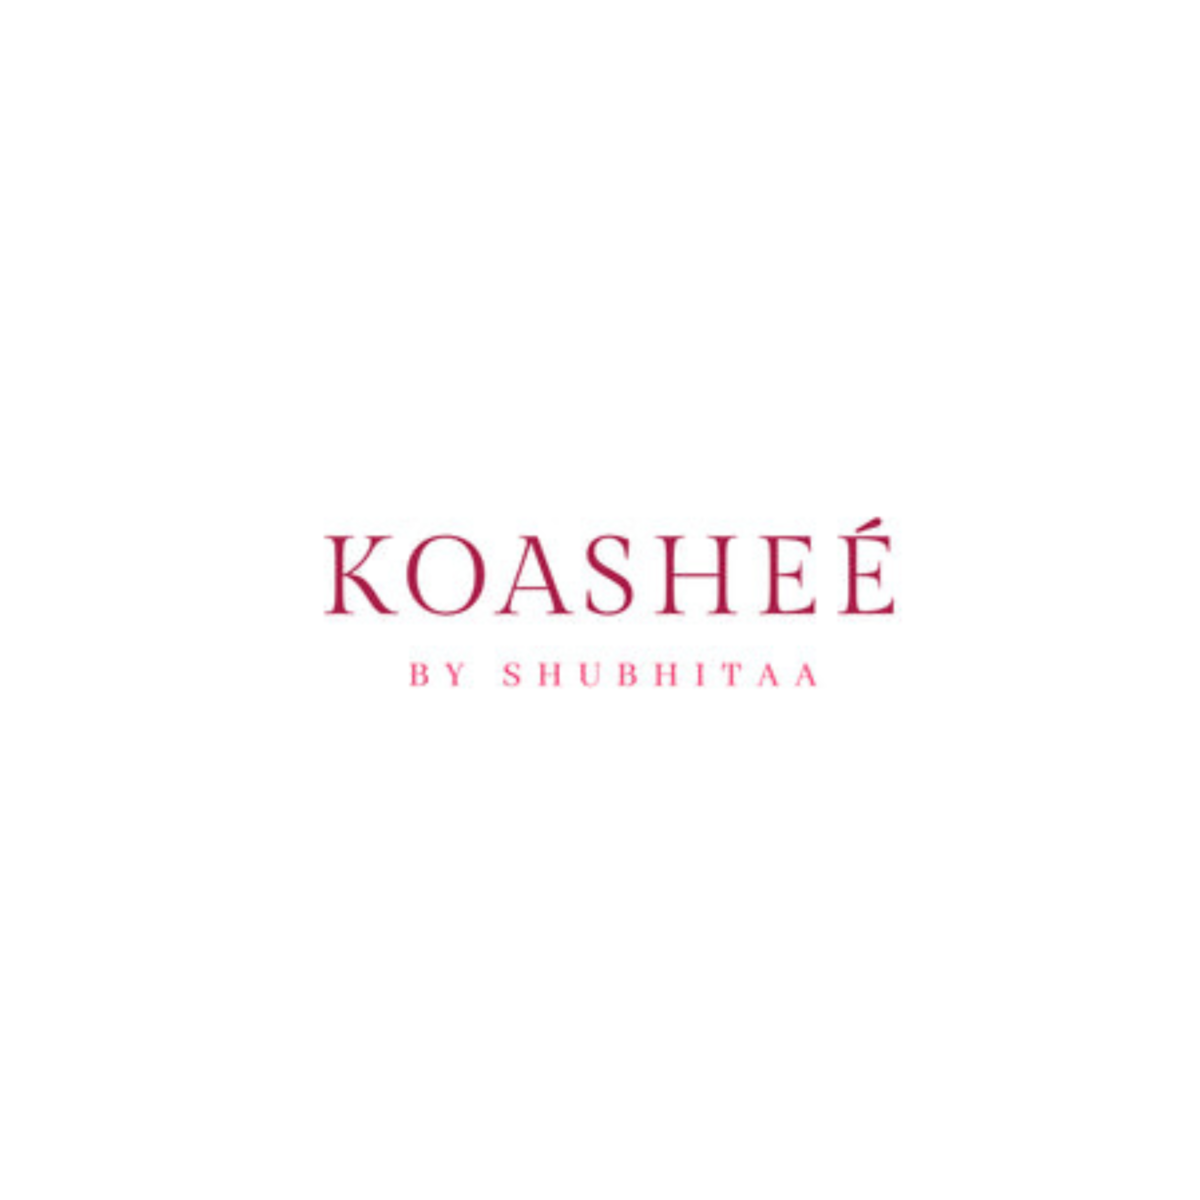 Koashee